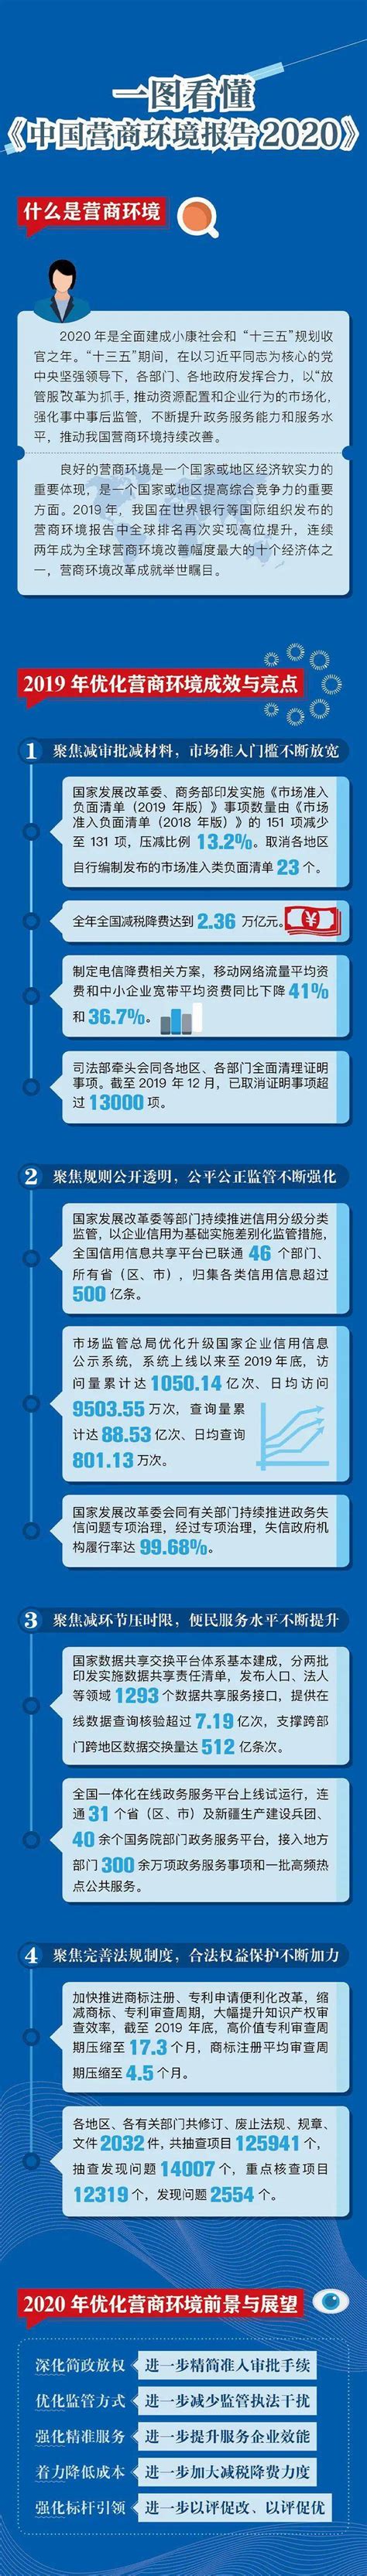 15个位次！全球营商环境排名升至31，中国如何做到的?-国内频道-内蒙古新闻网